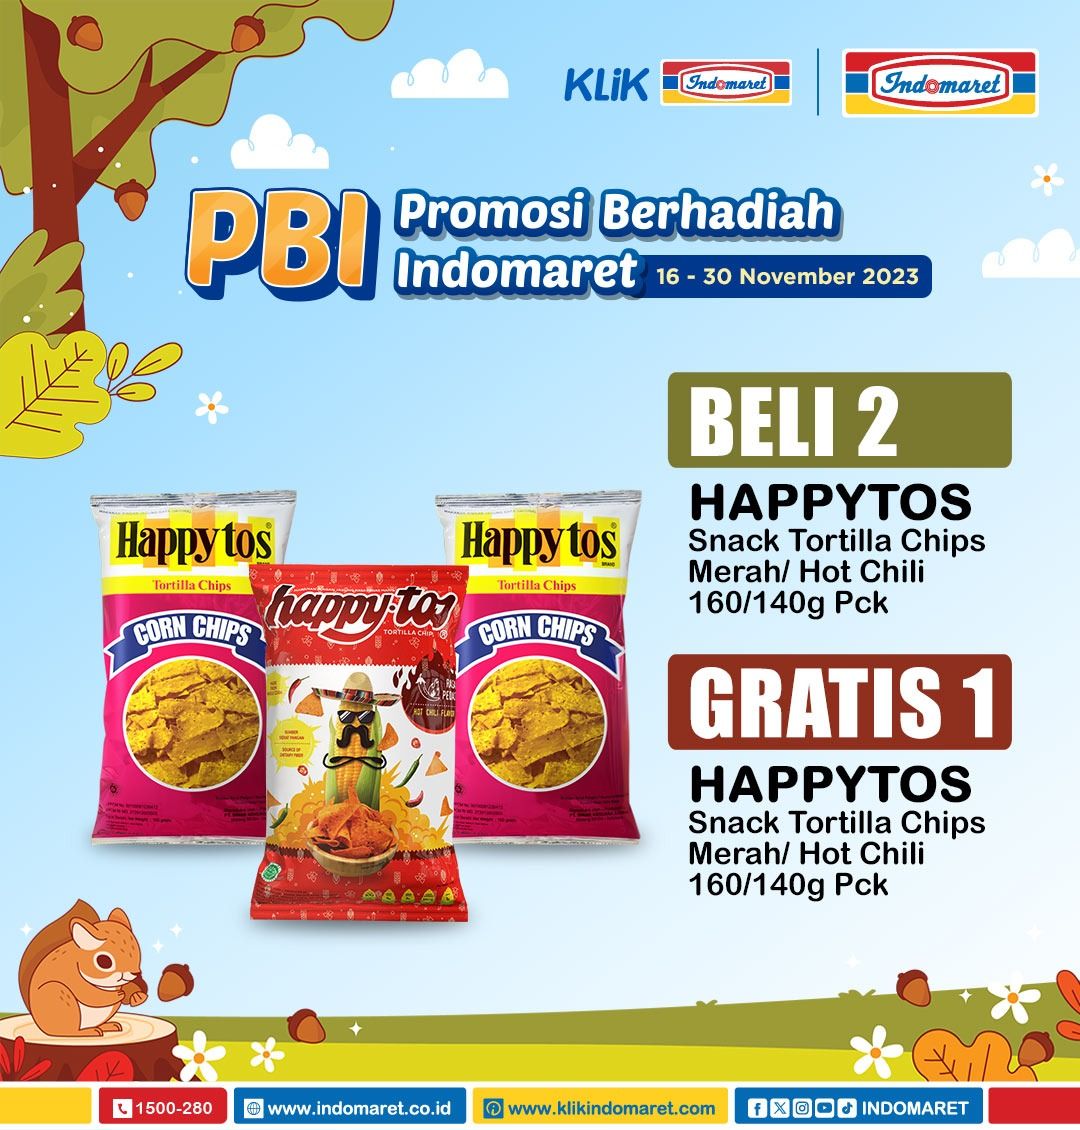 Katalog Promo Indomaret Hari Ini Terbaru 16-30 November 2023 beli satu gratis 1 Garuda Happytos